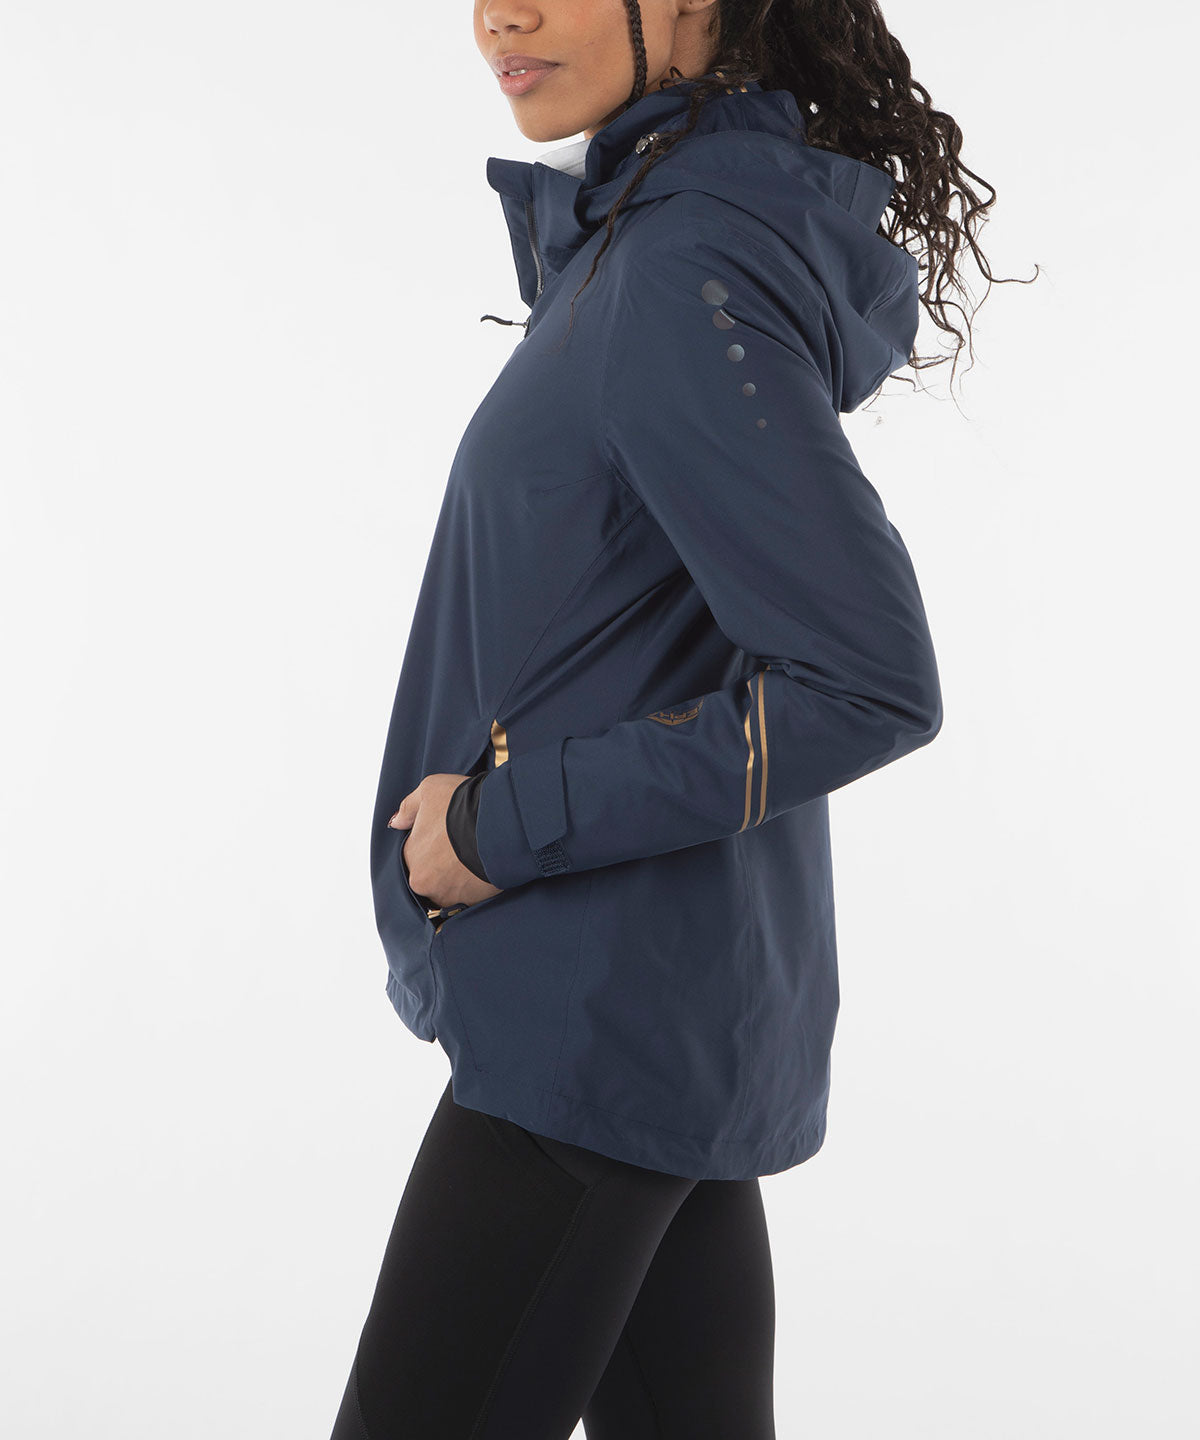 Women's Robin Zephal Z-Tech Waterproof Stretch Jacket - Sunice